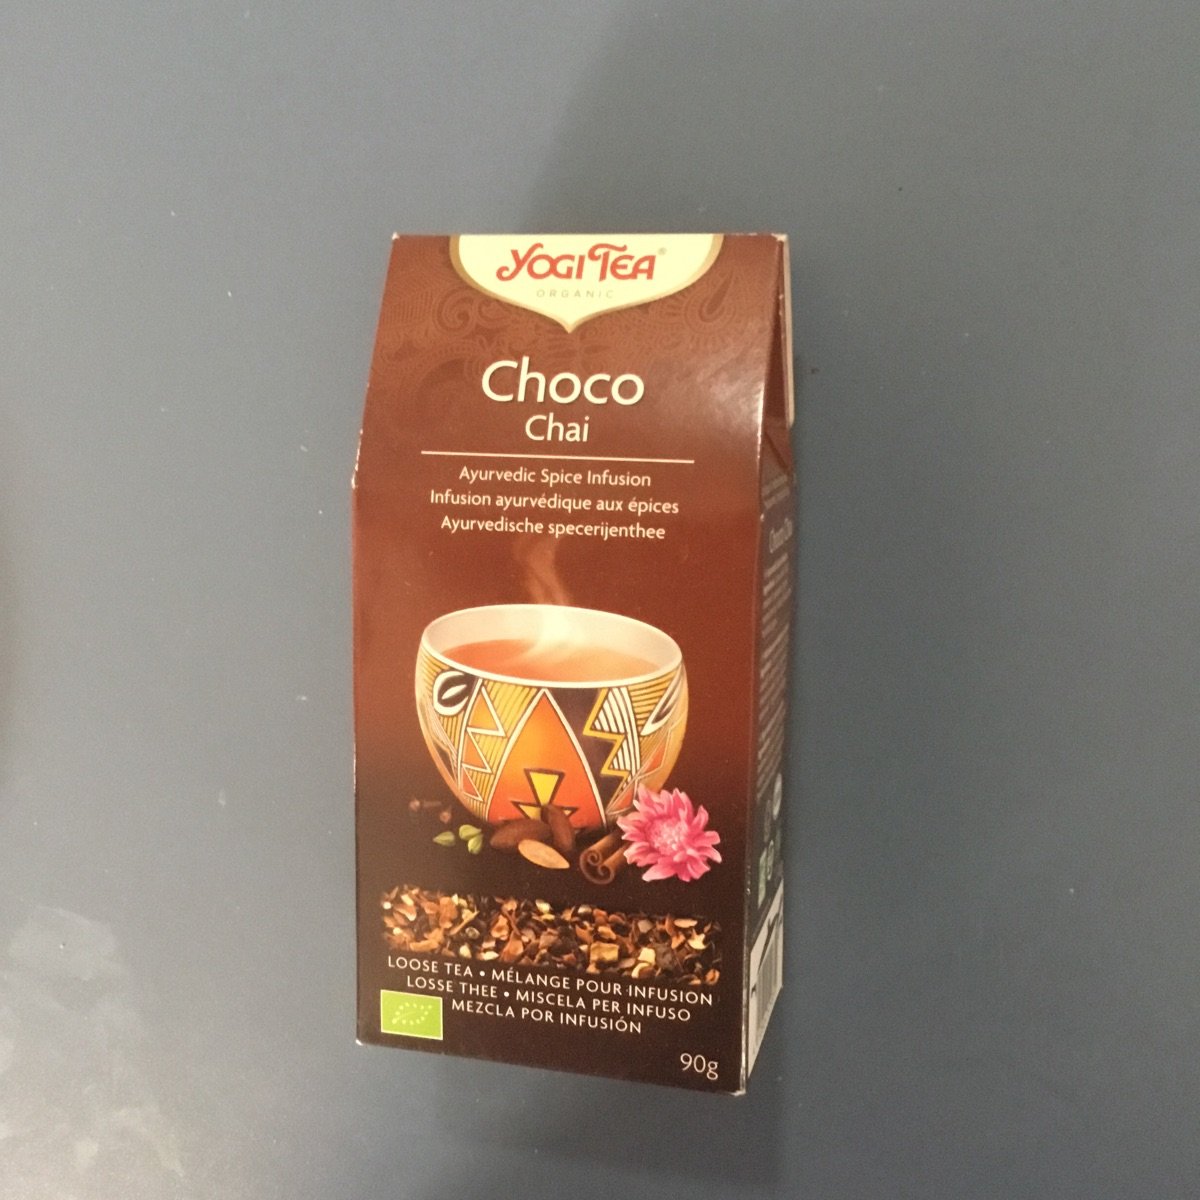 Yogi Tea Organic Choco Chai Reviews